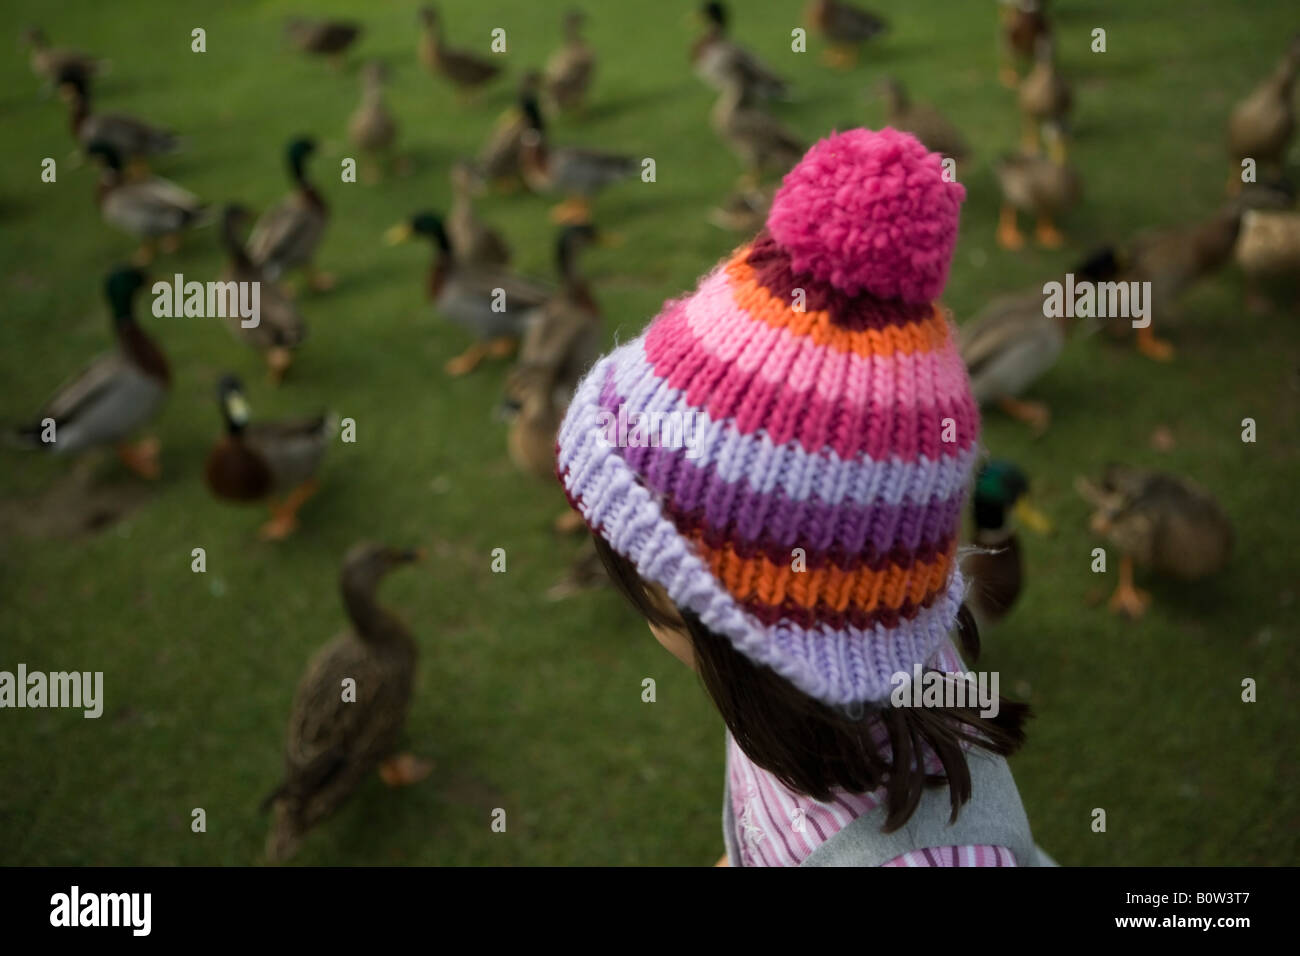 Fille parmi les canards avec woollen bobble hat Banque D'Images